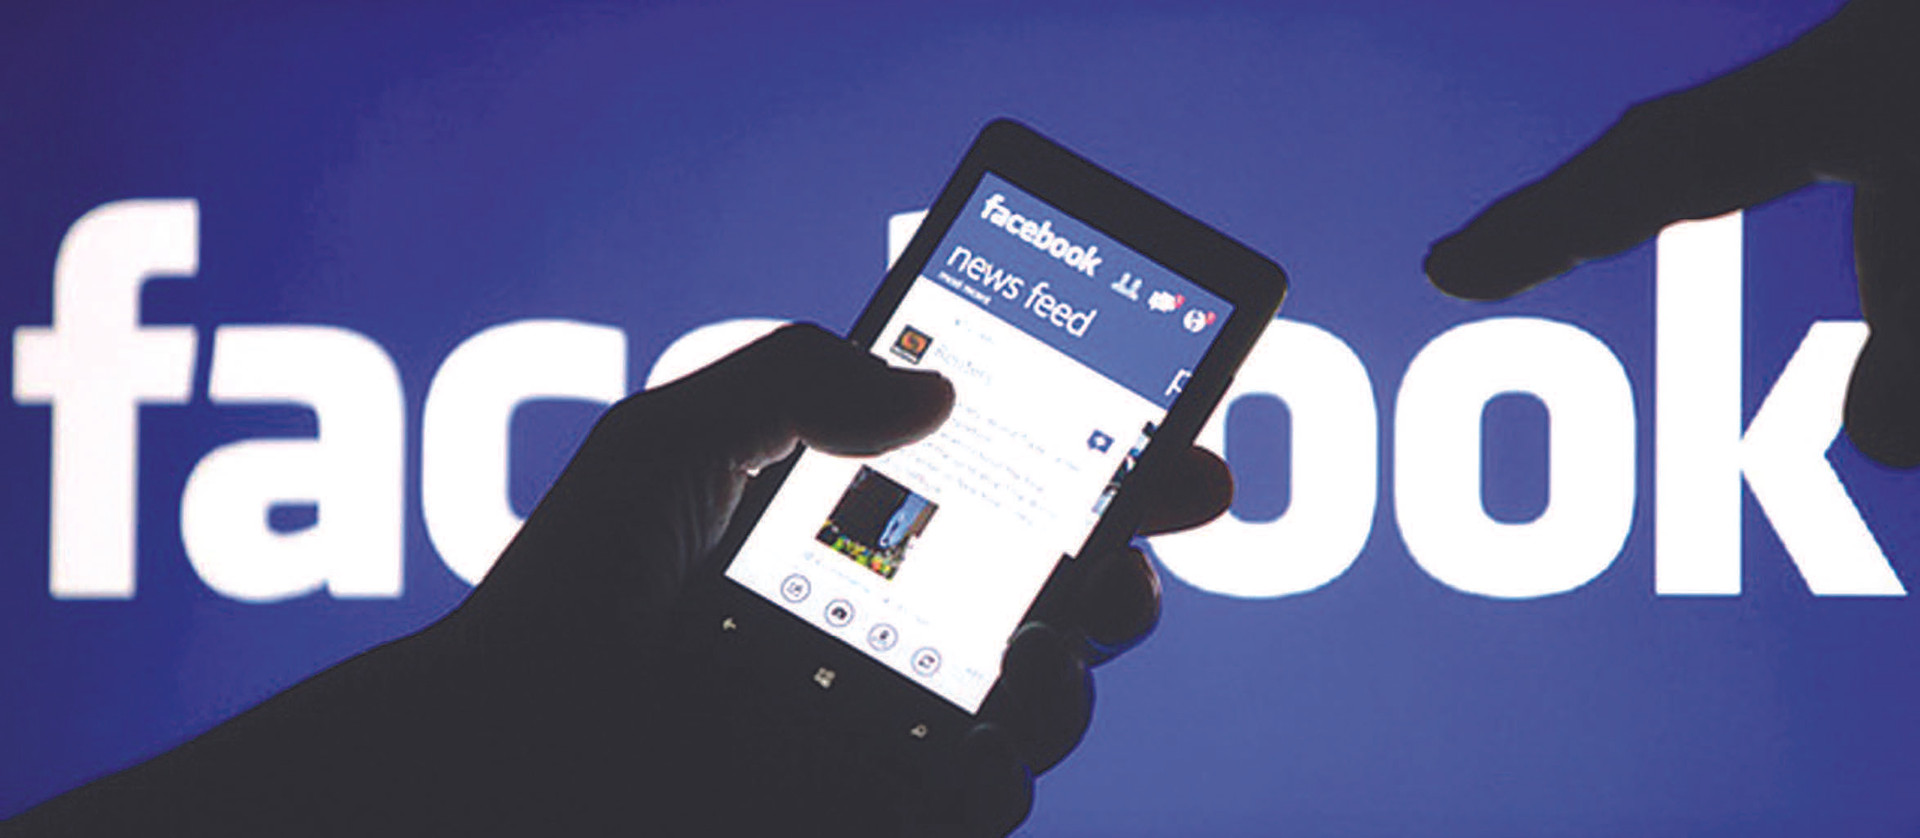 Facebook - Australia: Câu chuyện quyền lực của mạng xã hội và báo chí  - Ảnh 2.